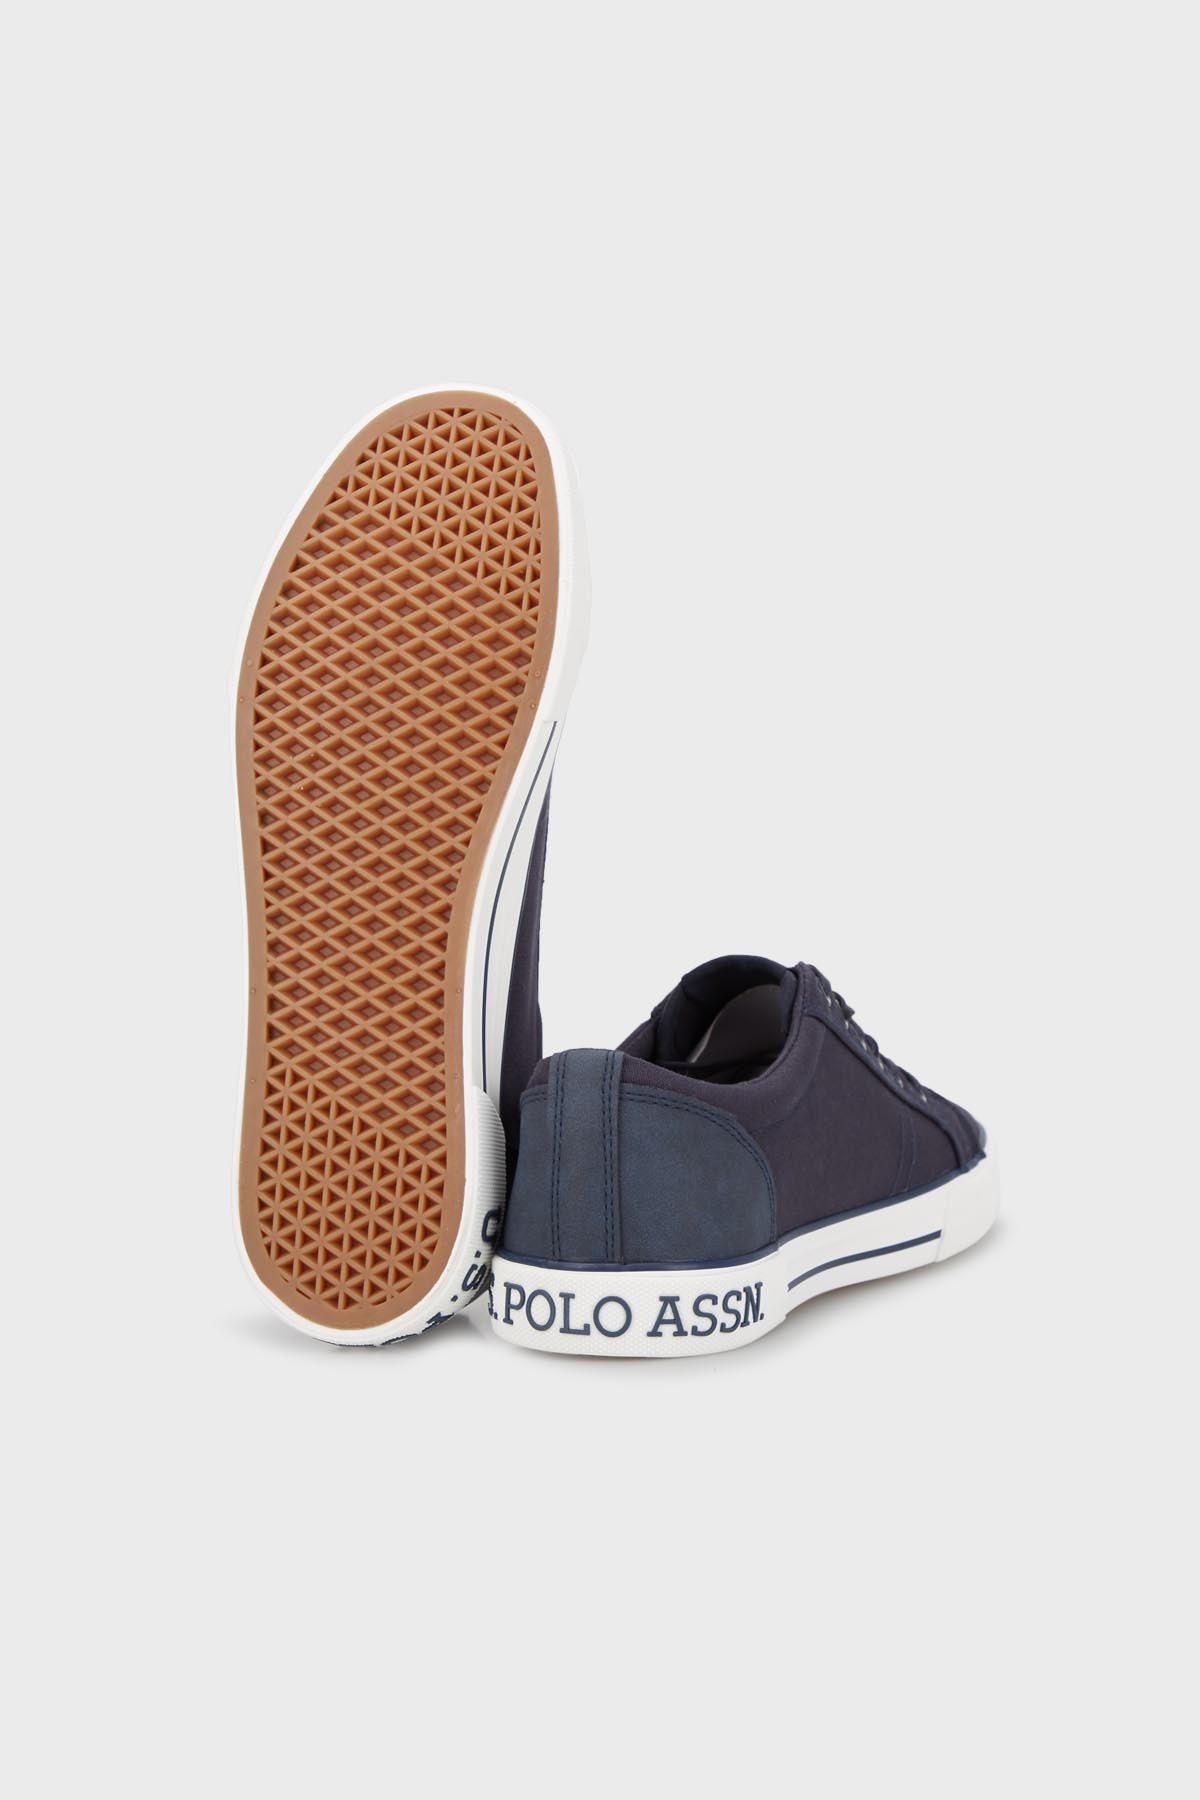 U.S. Polo Assn Sneaker Erkek Ayakkabı TEO 3FX LACİVERT